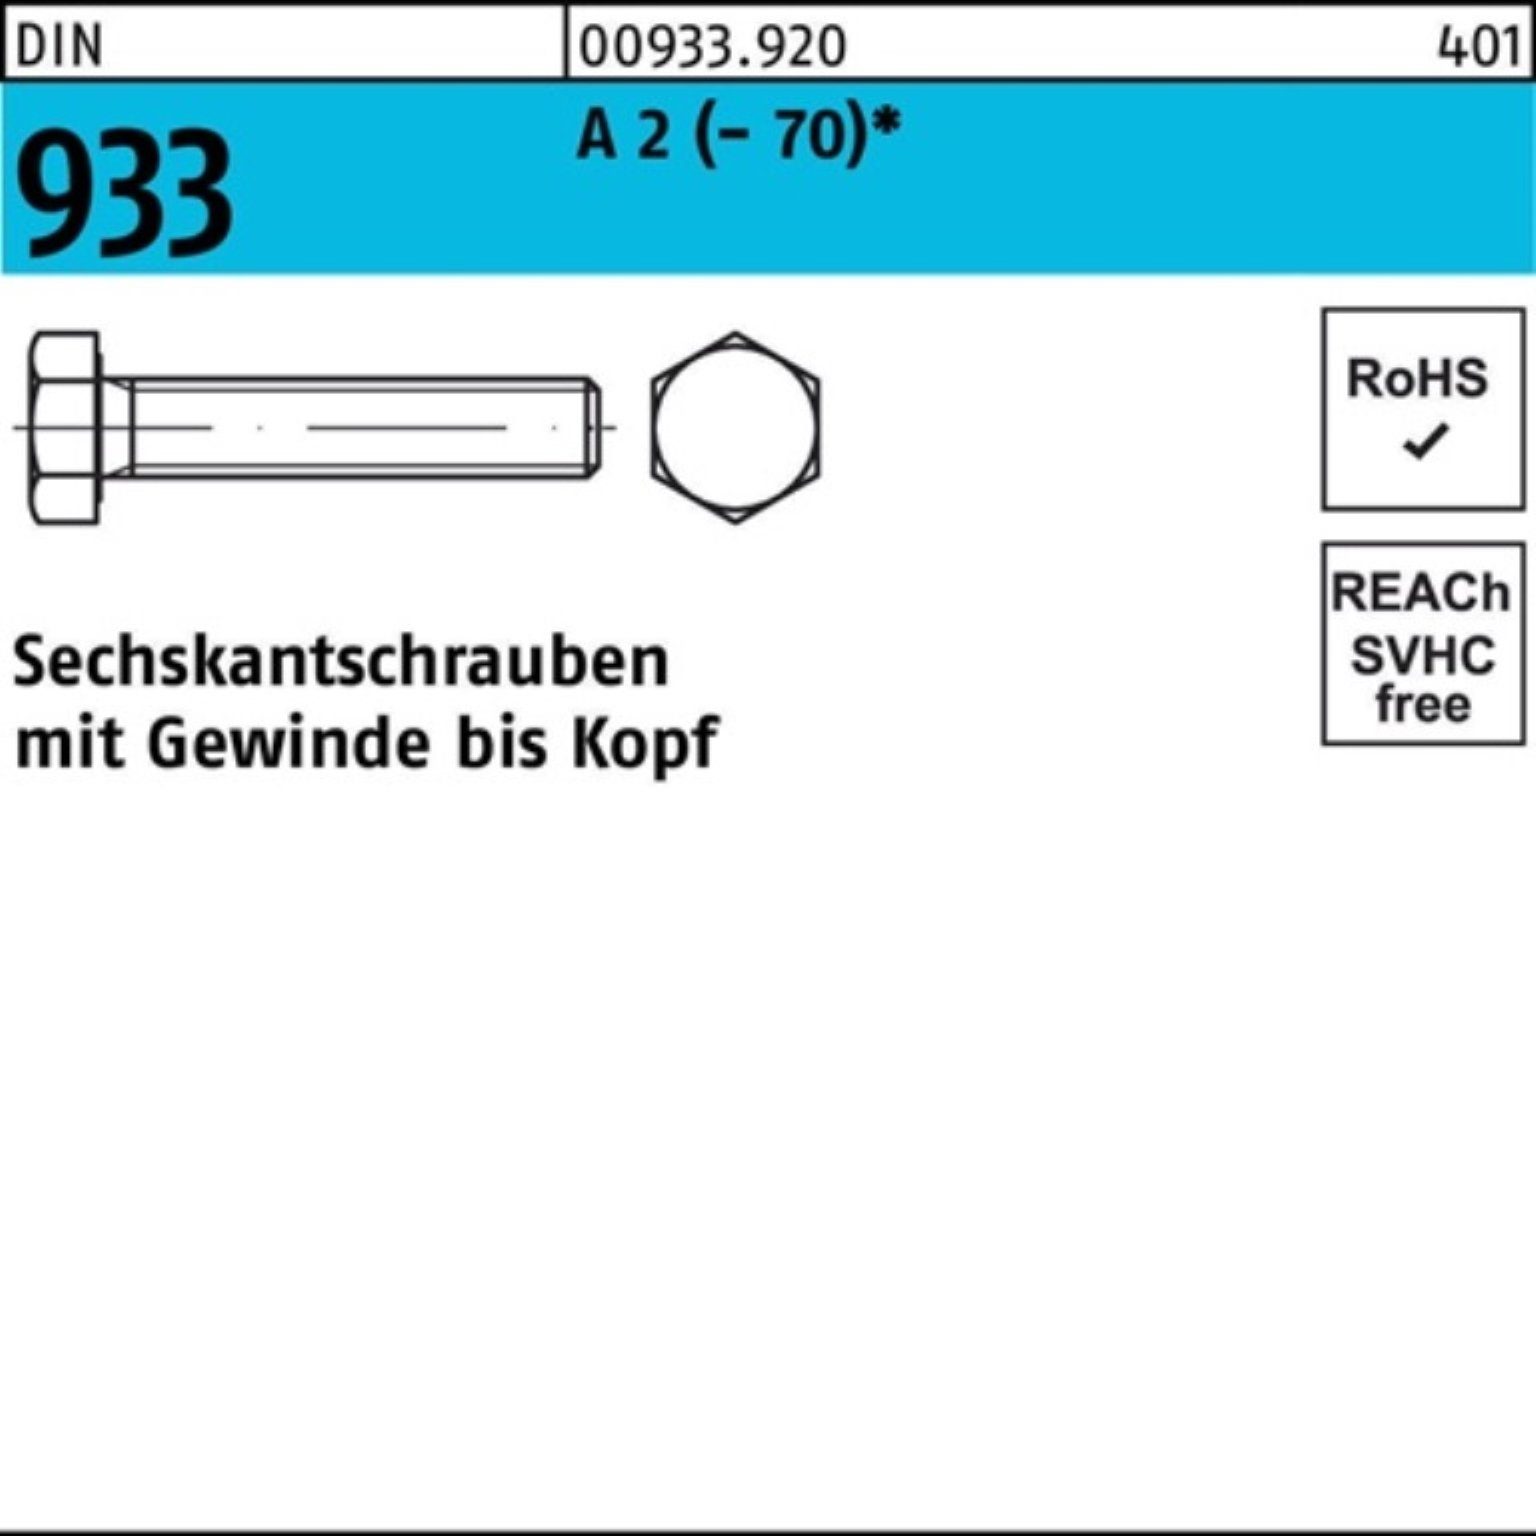 Reyher Sechskantschraube Pack 933 2 M10x Stück 14 DIN VG 100er (70) 100 A Sechskantschraube